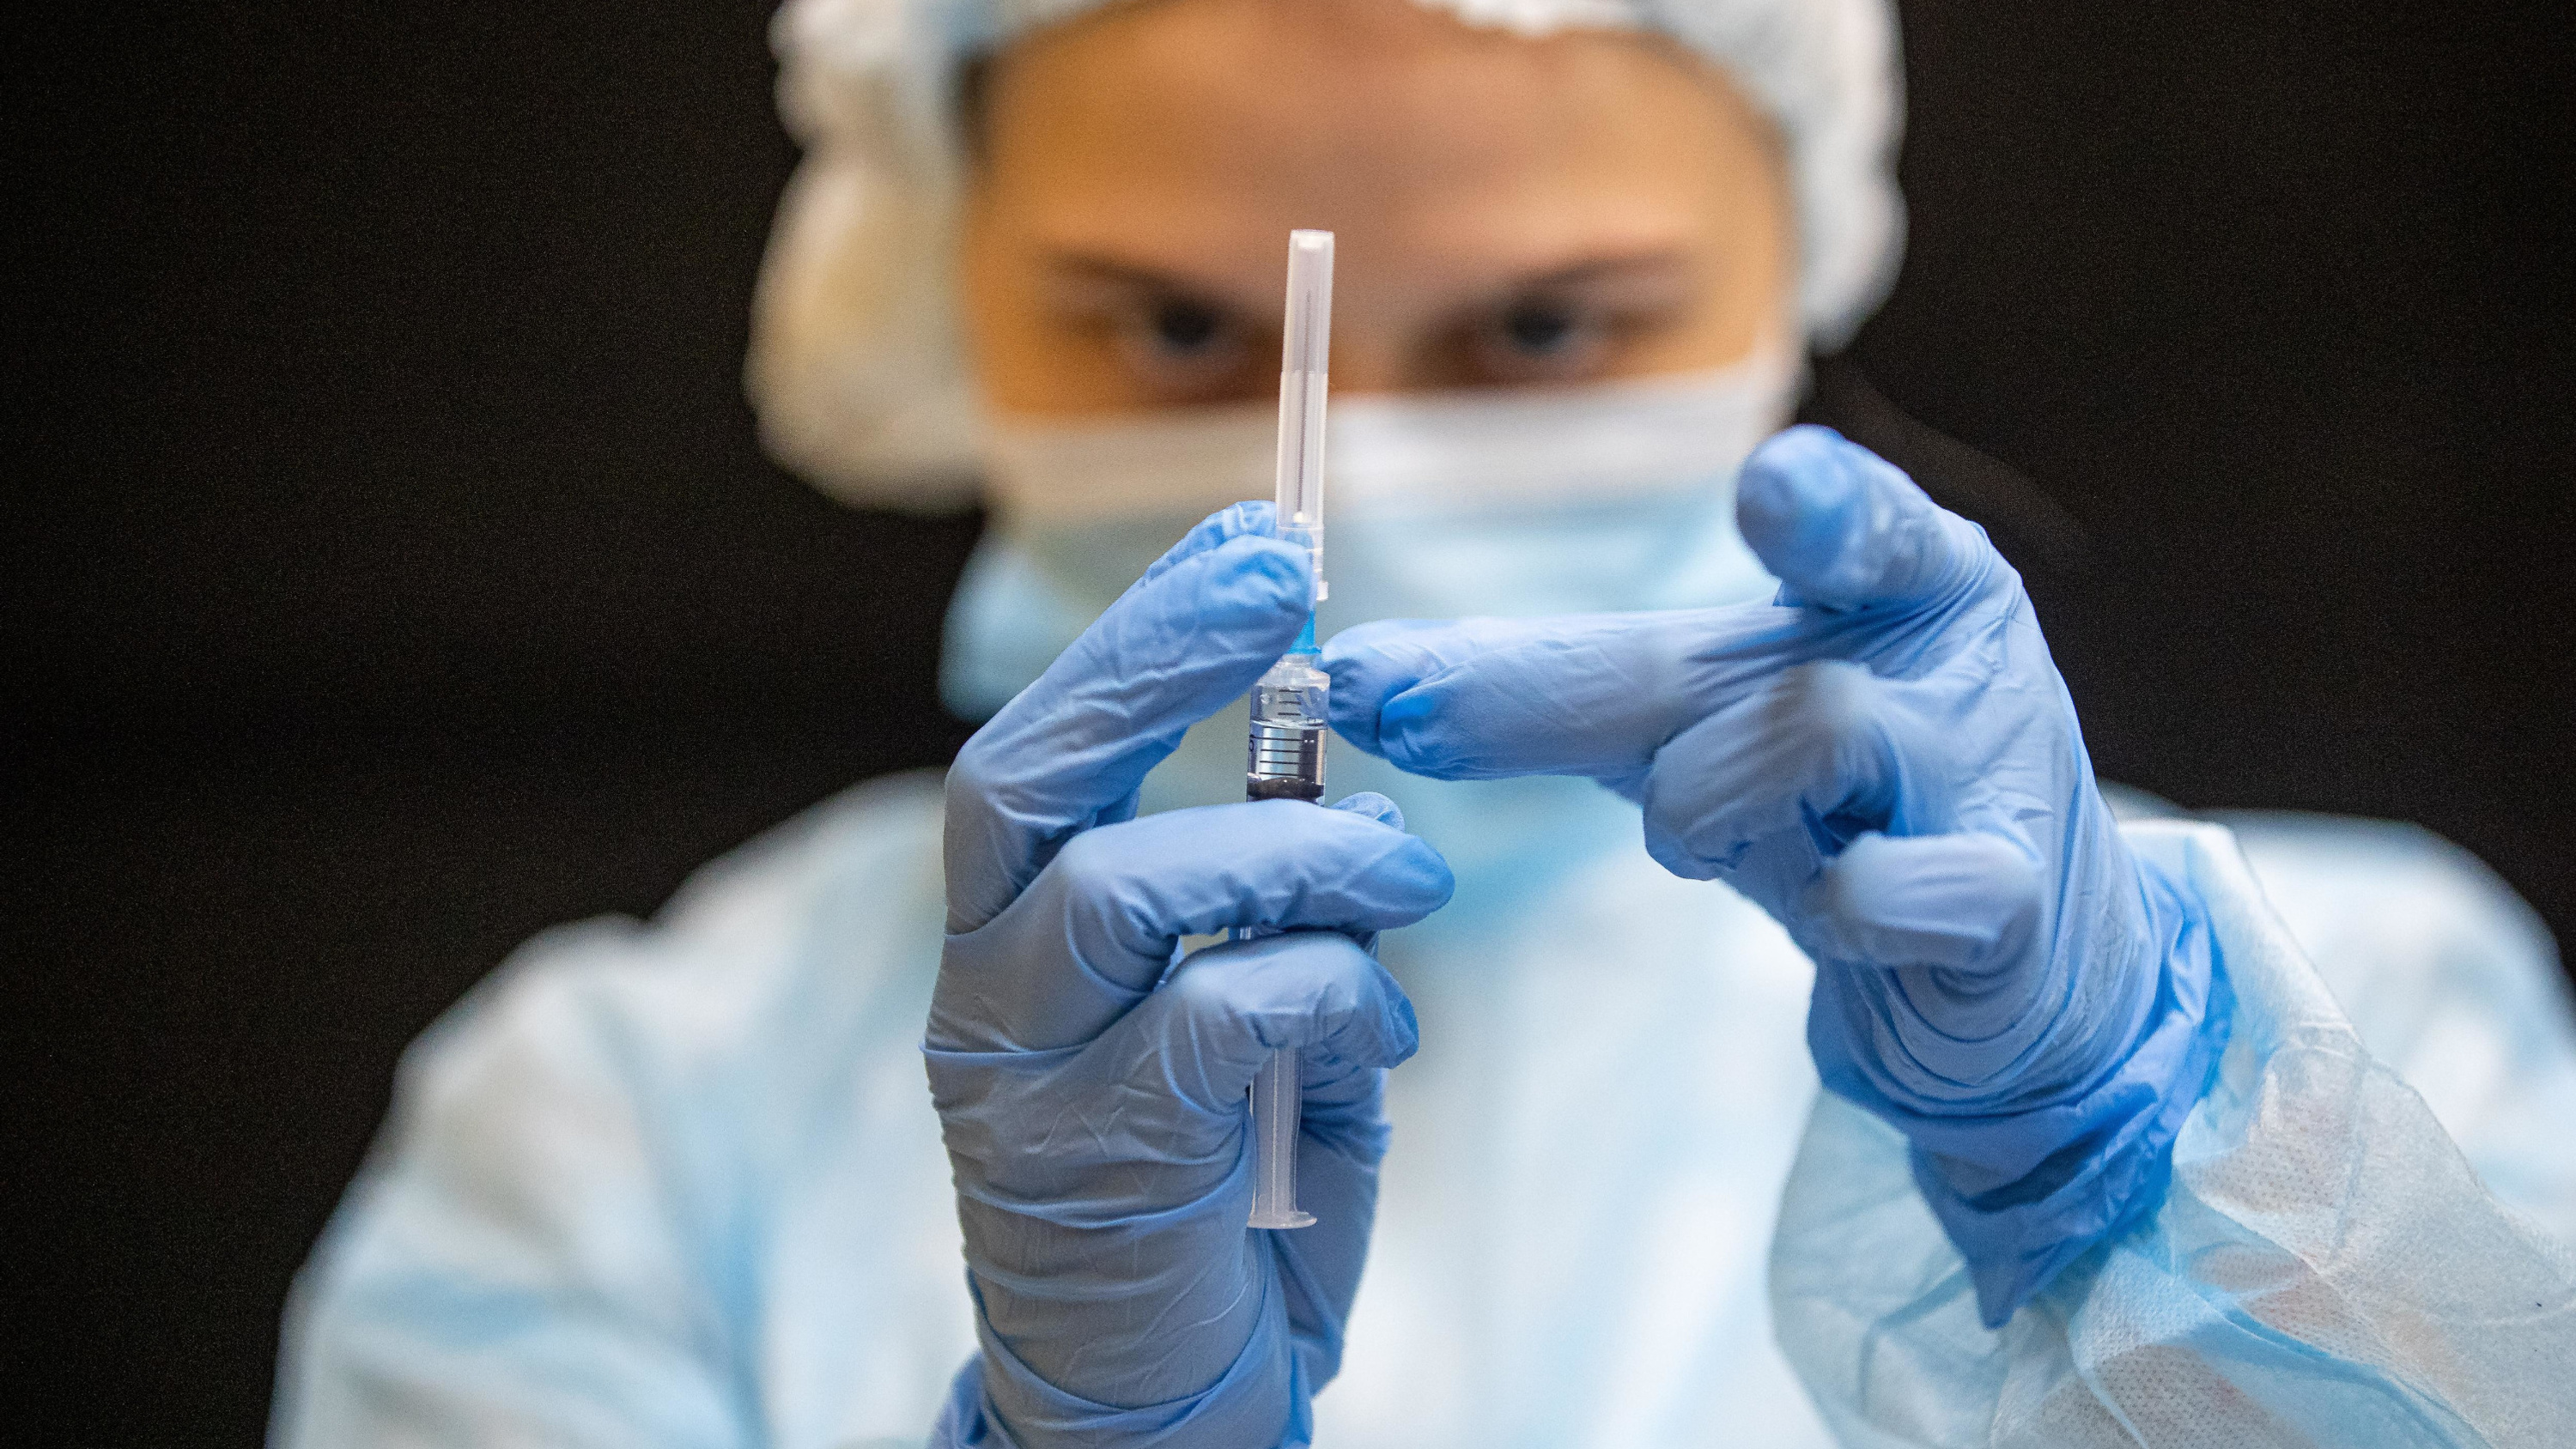 Вакцин нет, но вы держитесь: в России одна за другой пропадают прививки для детей